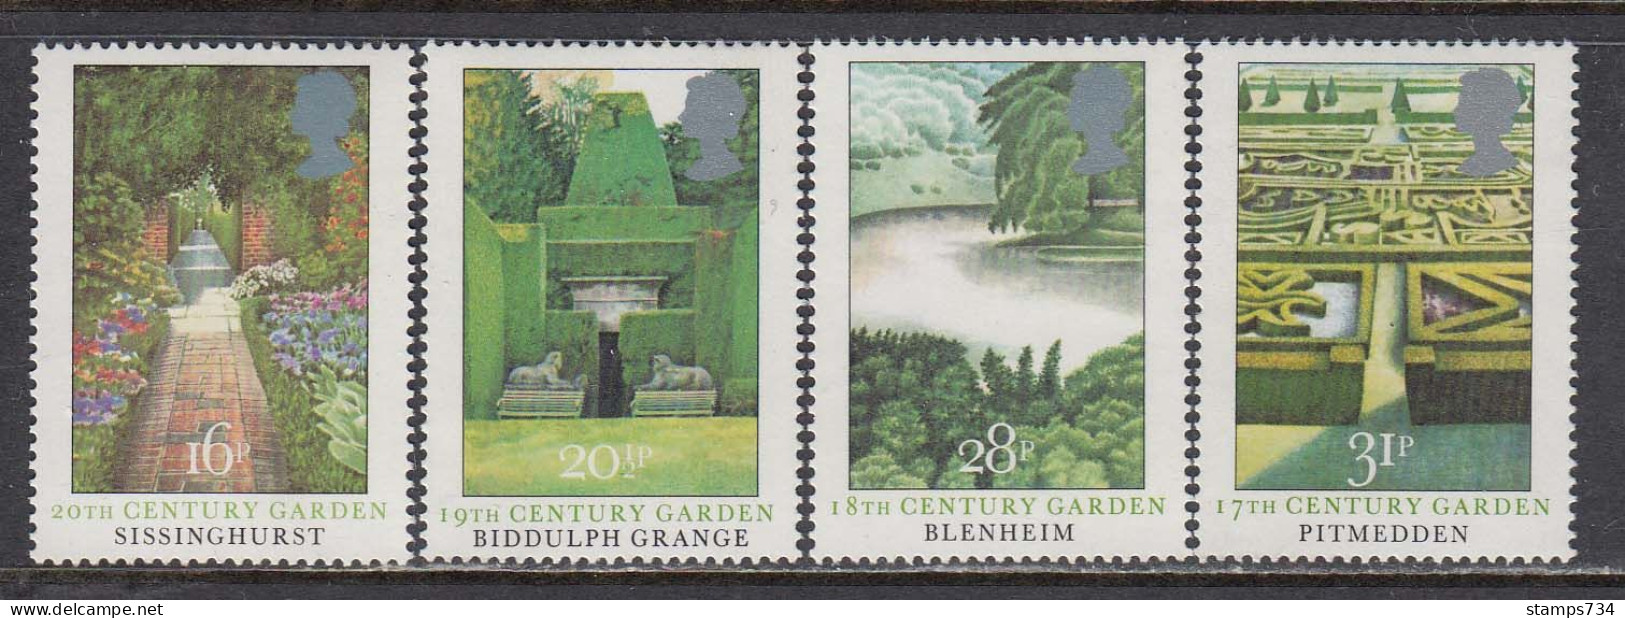 Great Britain 1983 - British Gardens, Set Of 4 Stamps, MNH** - Ungebraucht